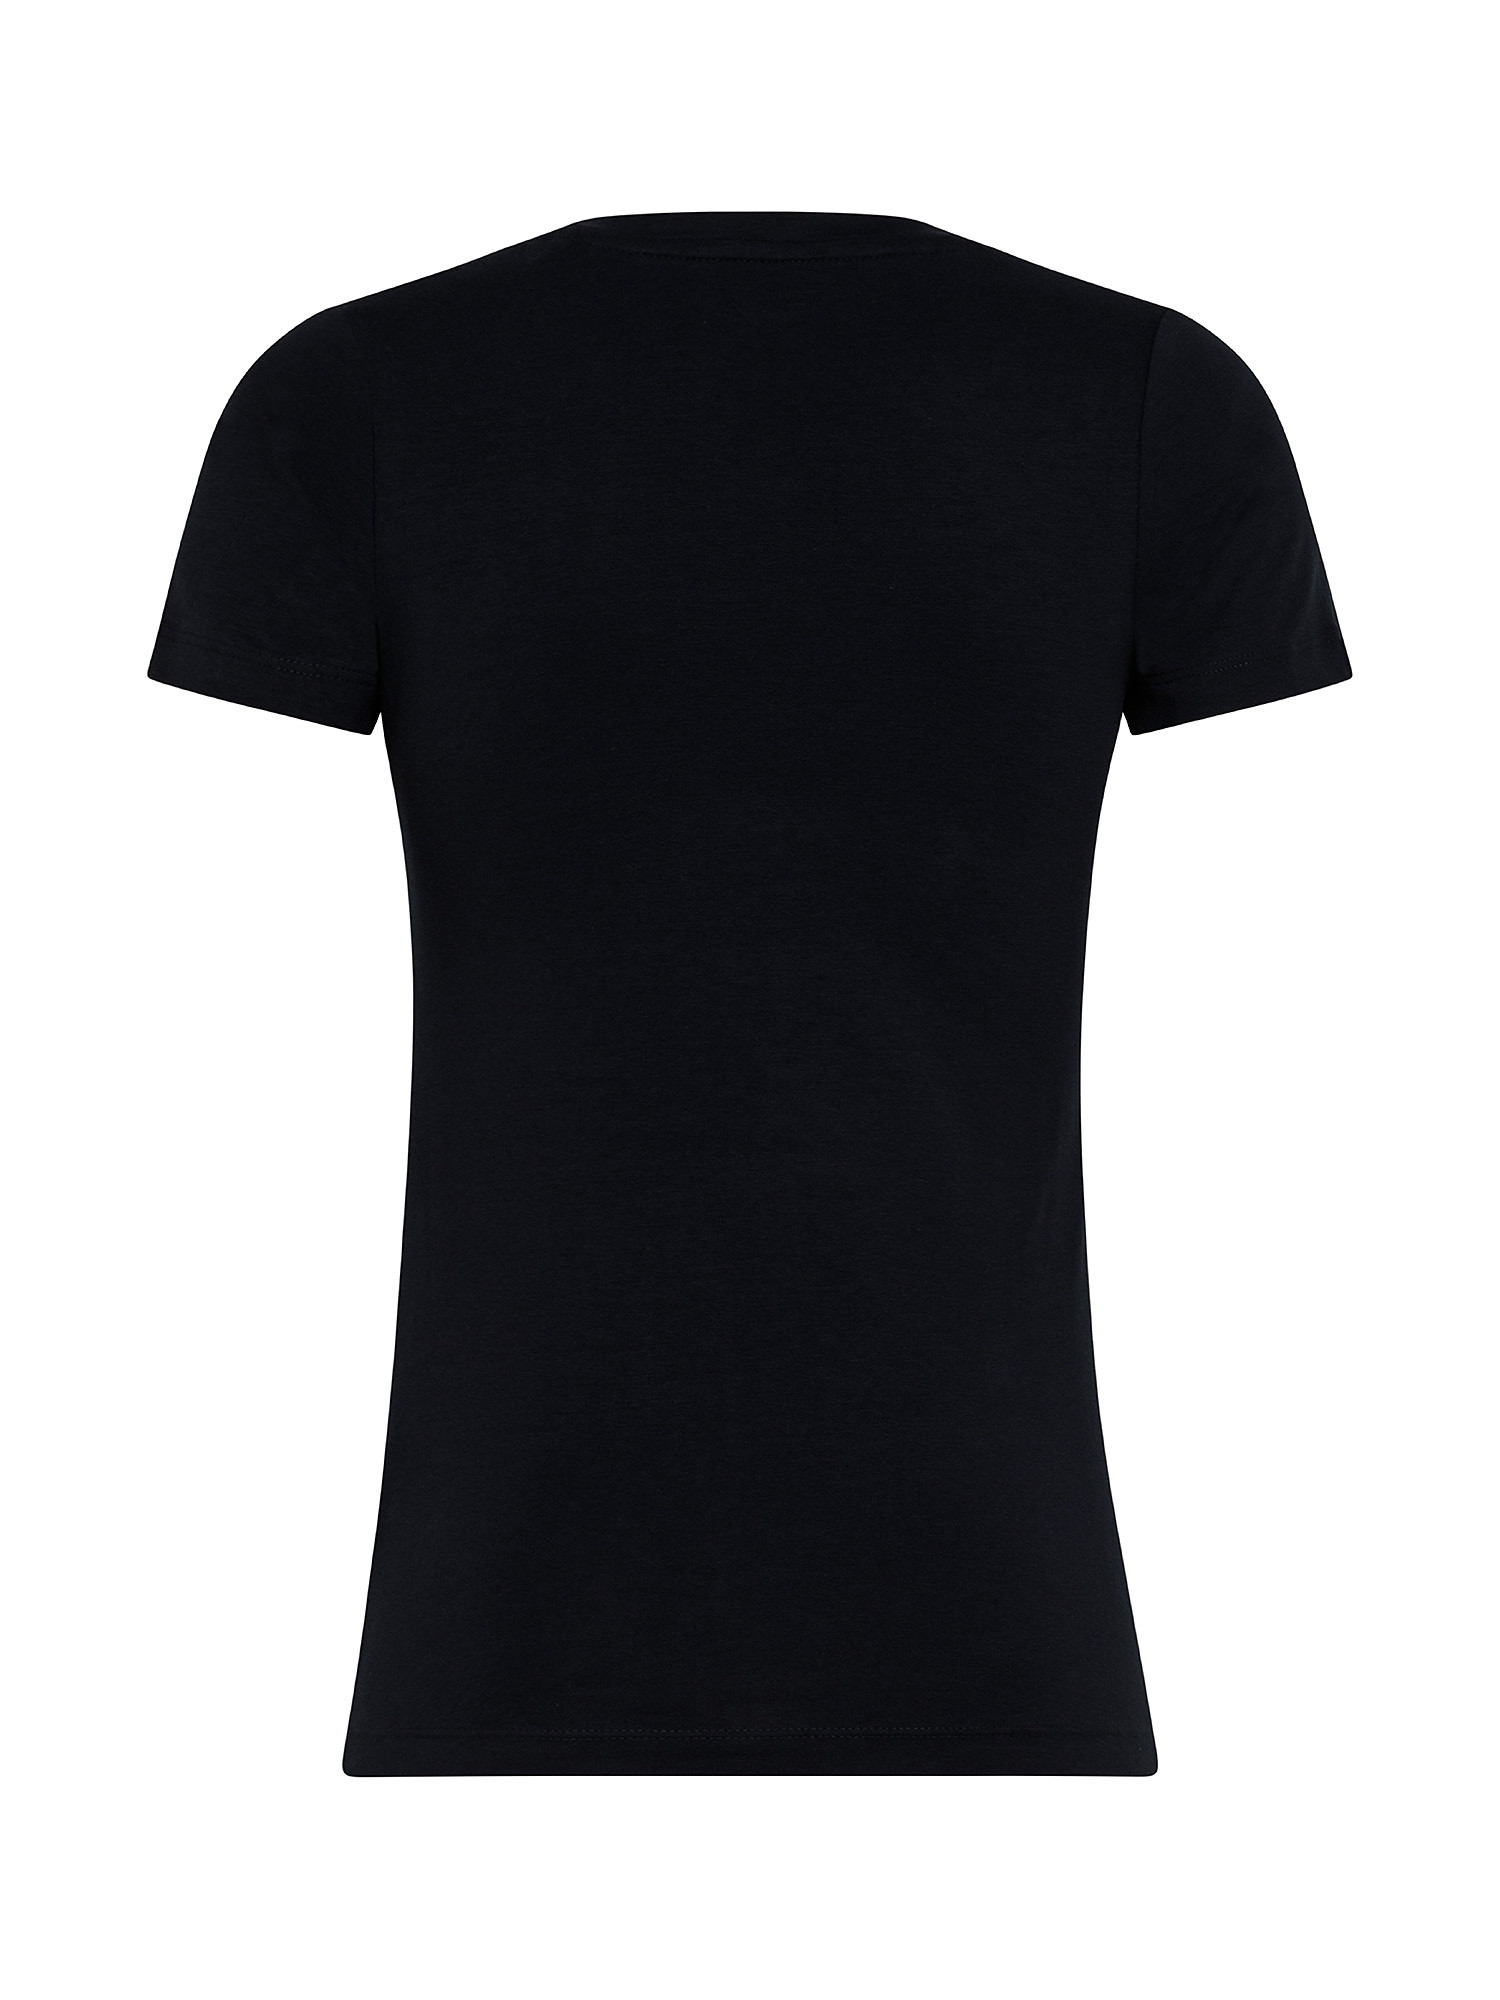 Violette cotton T-shirt, Dark Blue, large image number 1